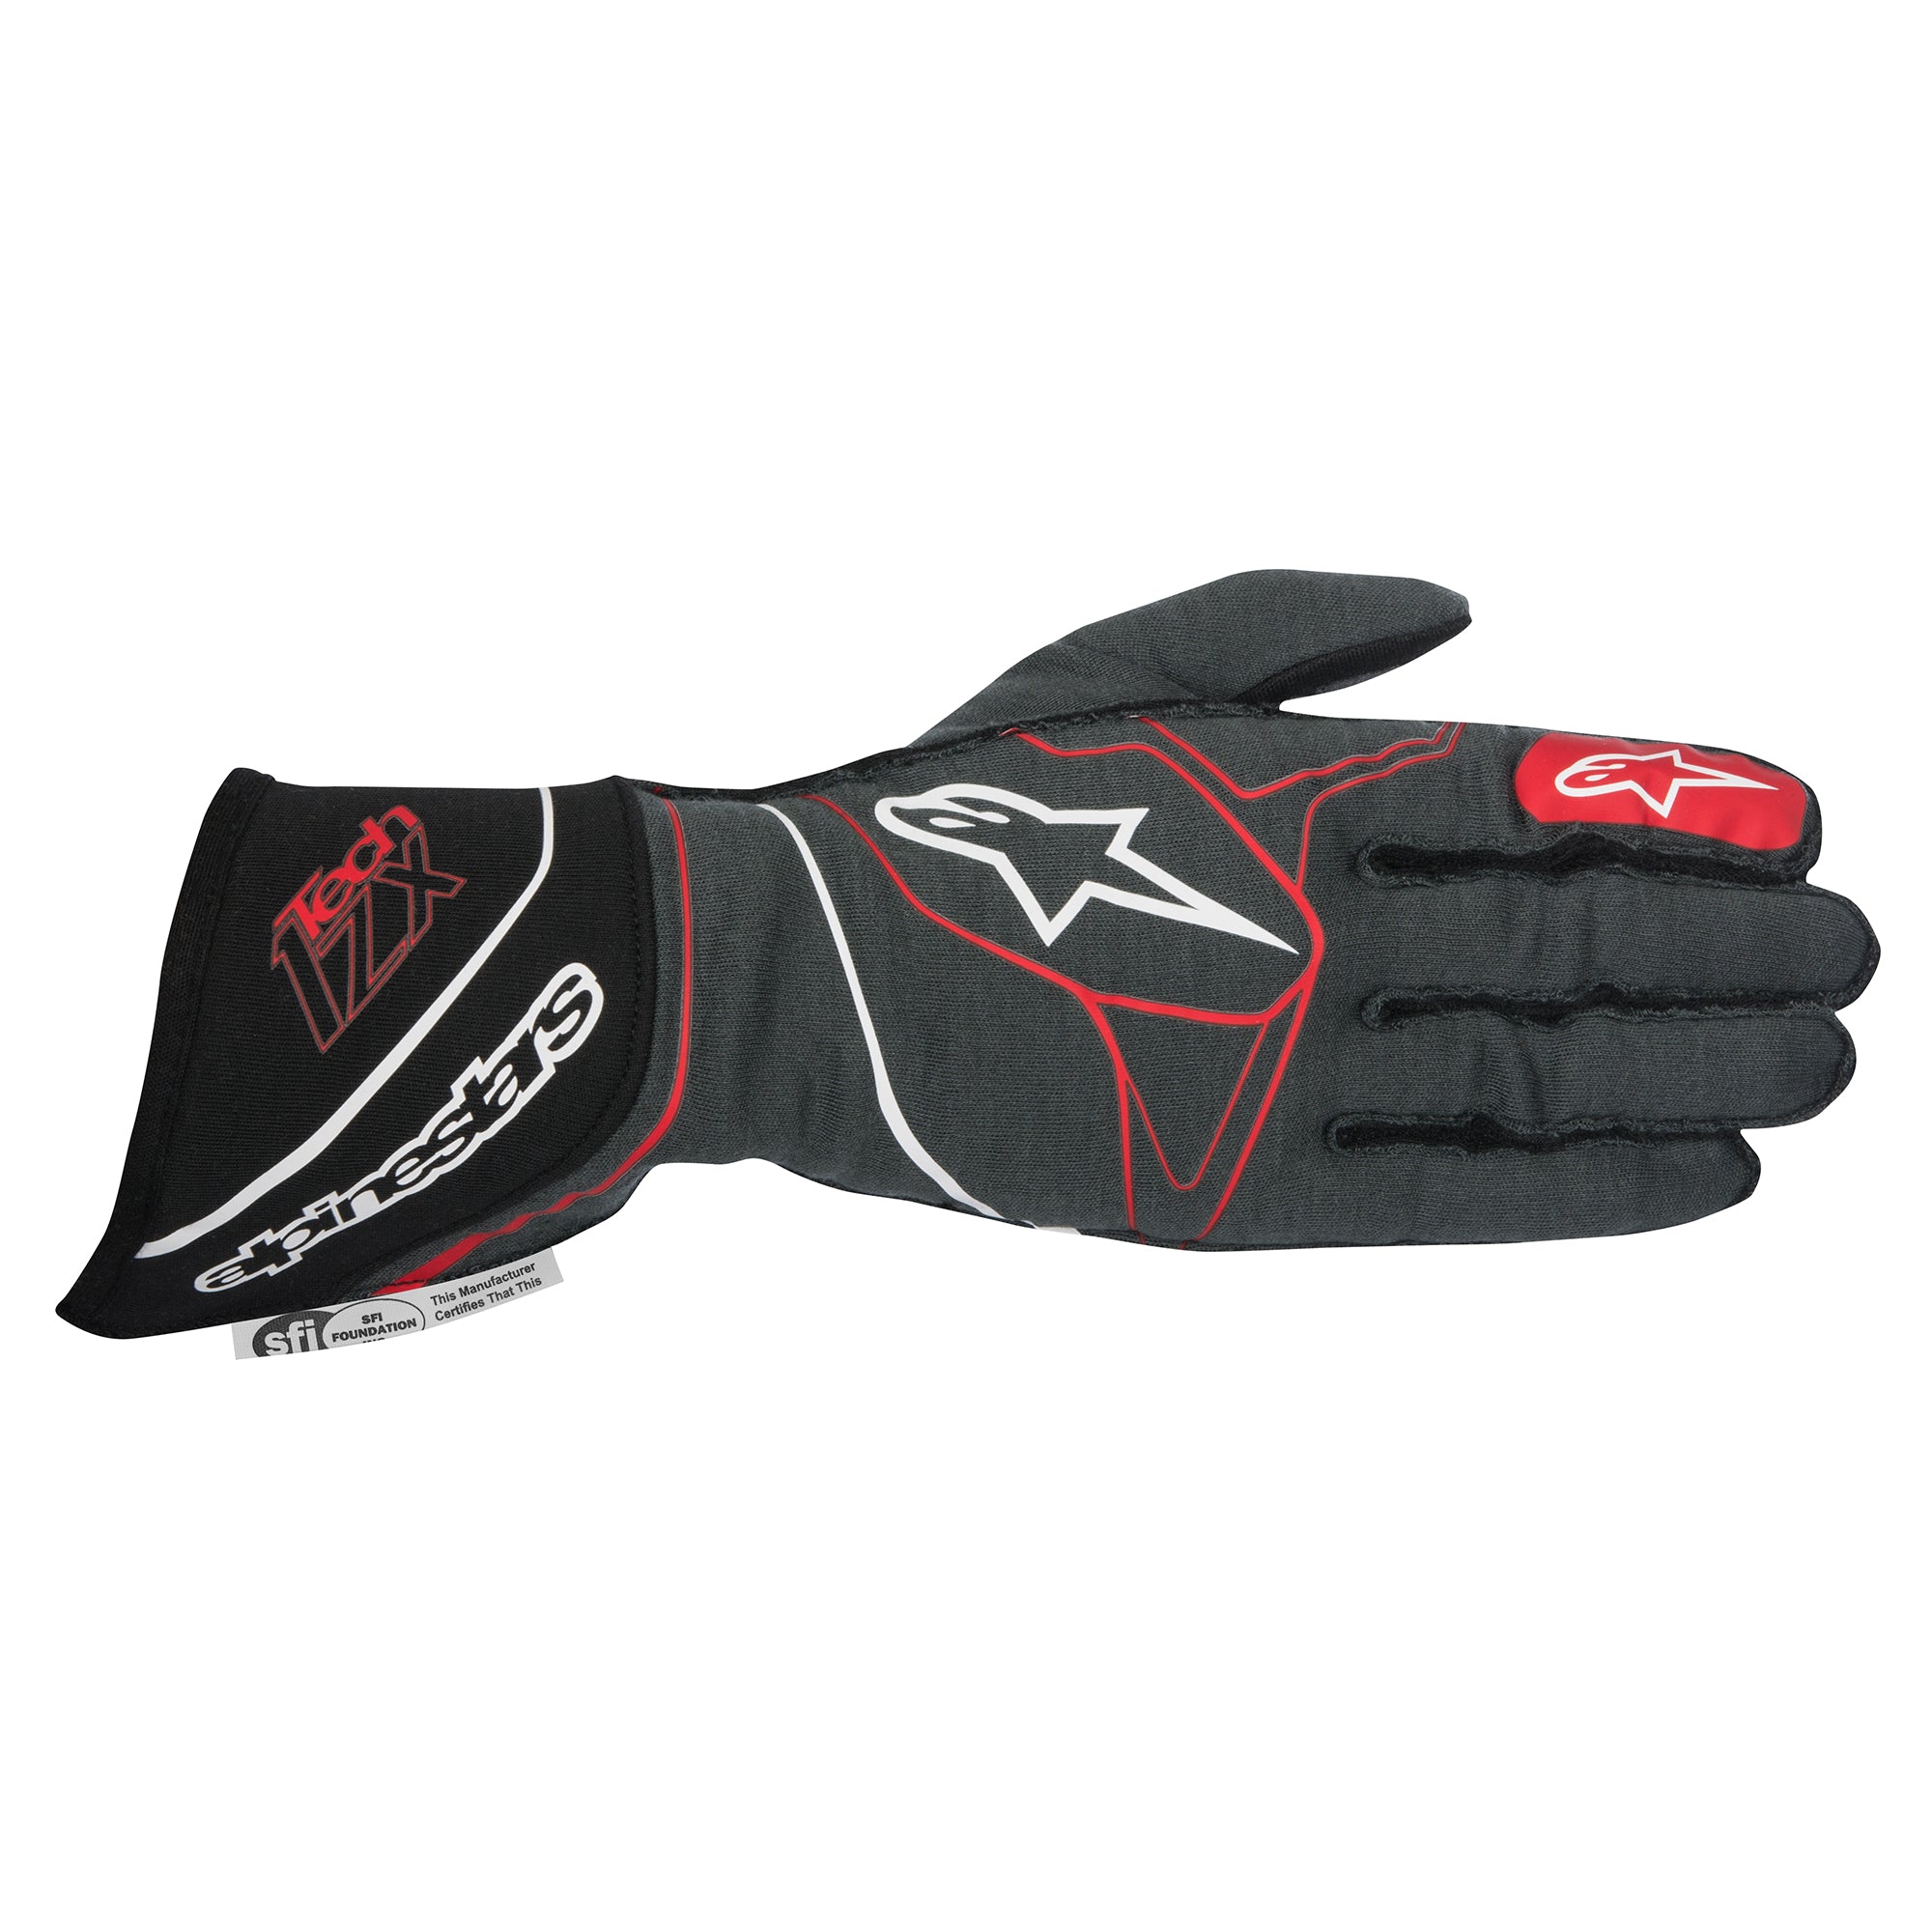 Tech-1 ZX Gloves